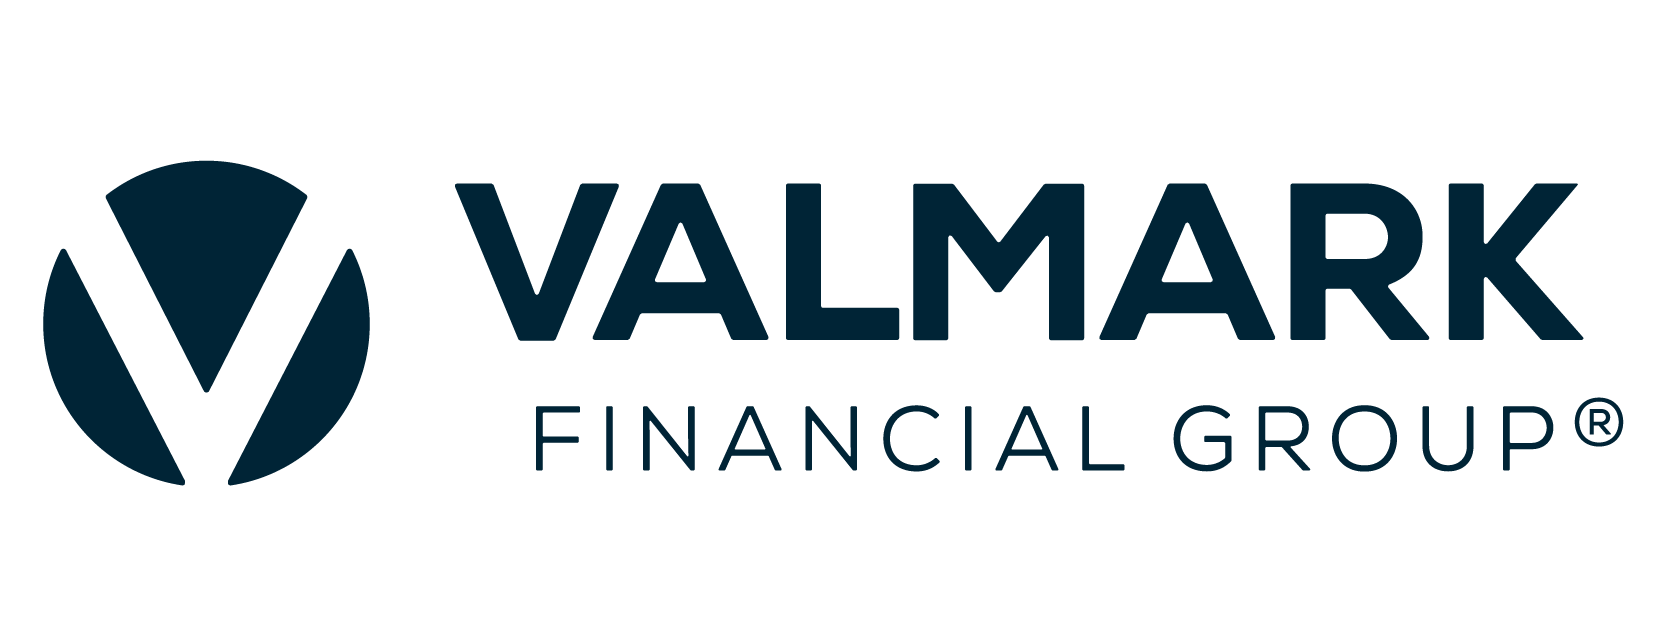 Valmark Financial Group logo